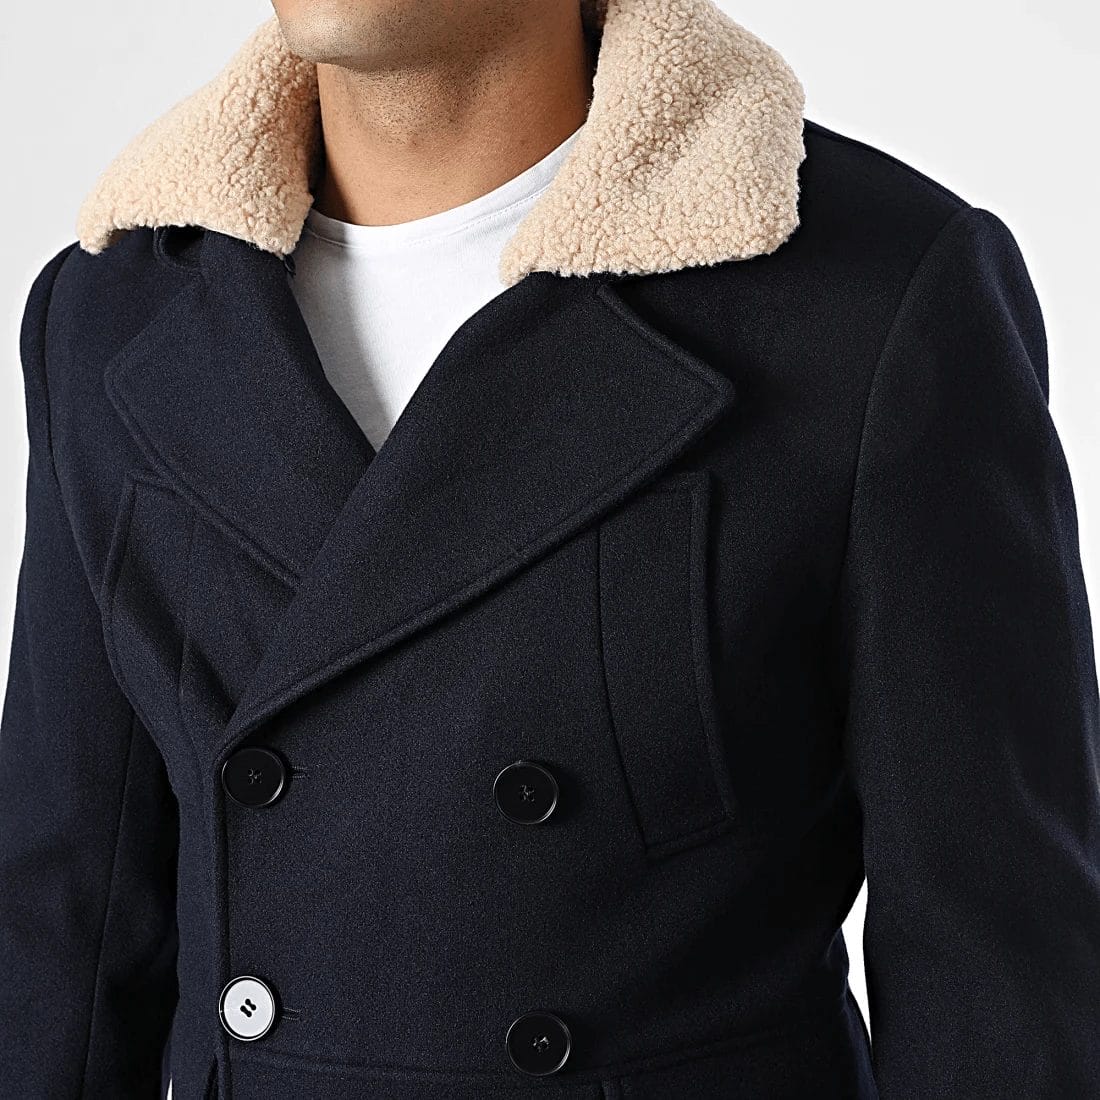 NEXT EDGE Manteau à Capuche Pour Homme-Gris à prix pas cher